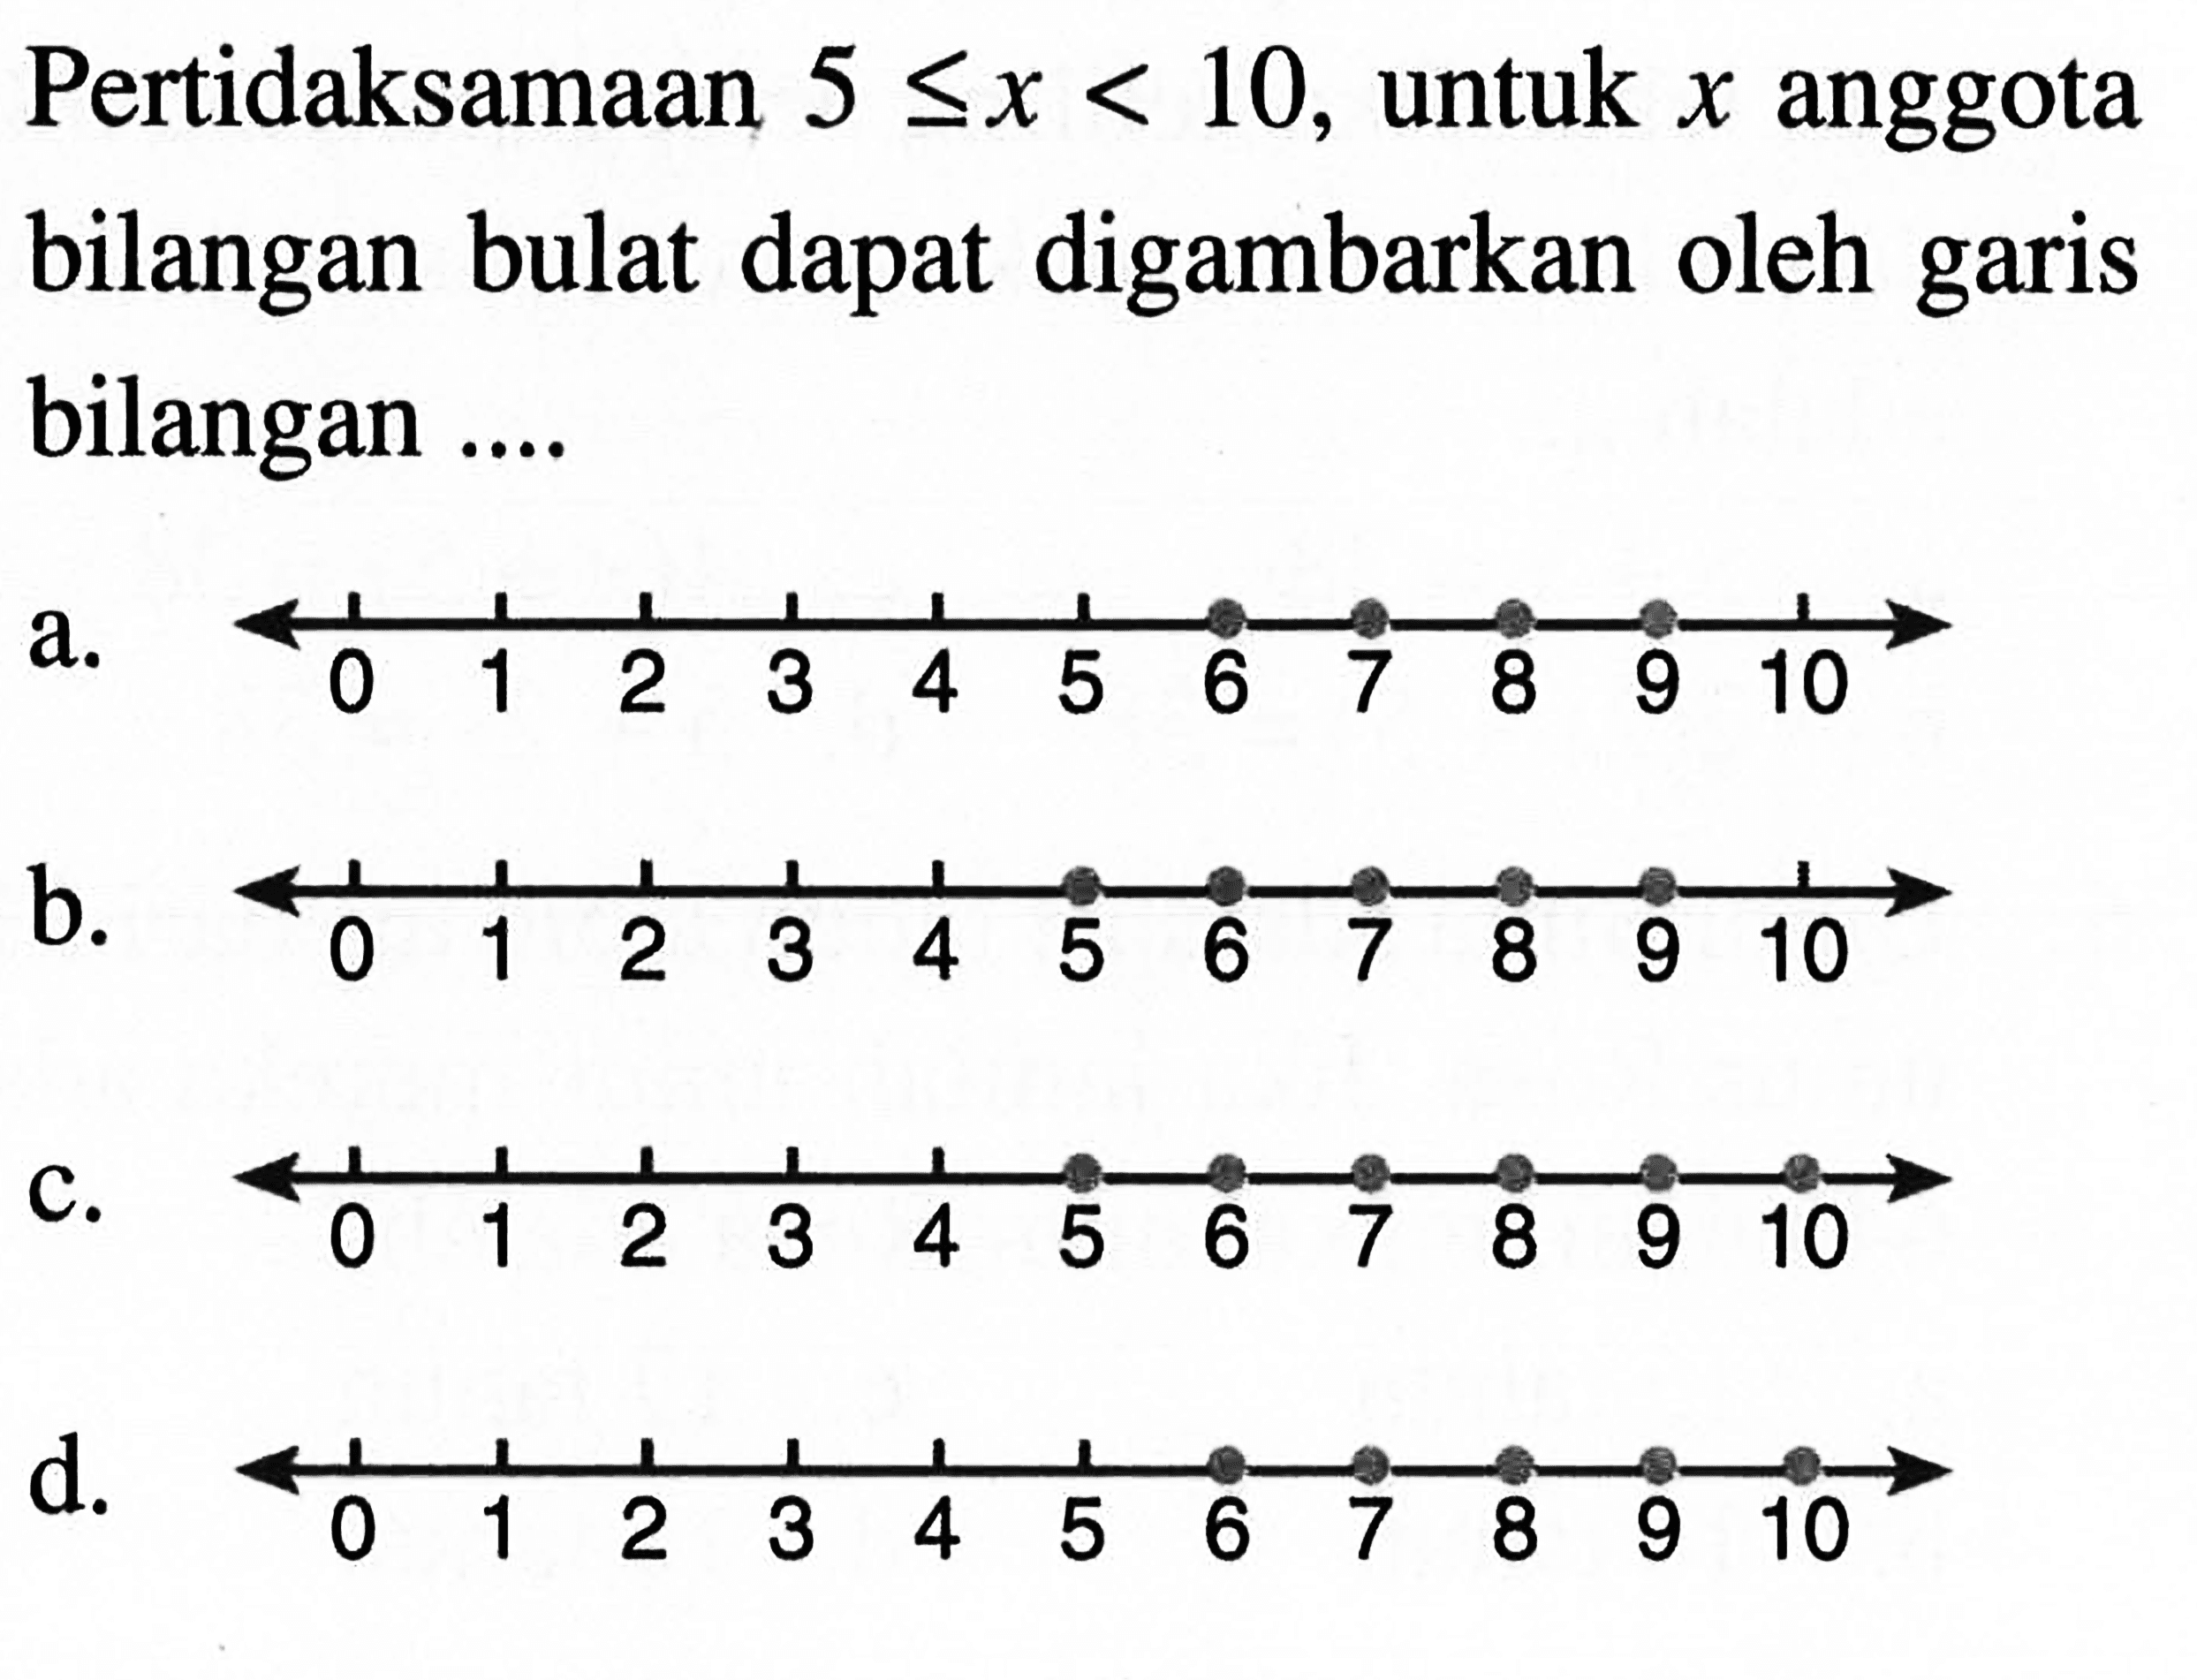 Pertidaksamaan 5 <= x < 10, untuk x anggota bilangan bulat dapat digambarkan oleh garis bilangan... a. 0 1 2 3 4 5 6 7 8 9 10 b. 0 1 2 3 4 5 6 7 8 9 10 c. 0 1 2 3 4 5 6 7 8 9 10 d. 0 1 2 3 4 5 6 7 8 9 10